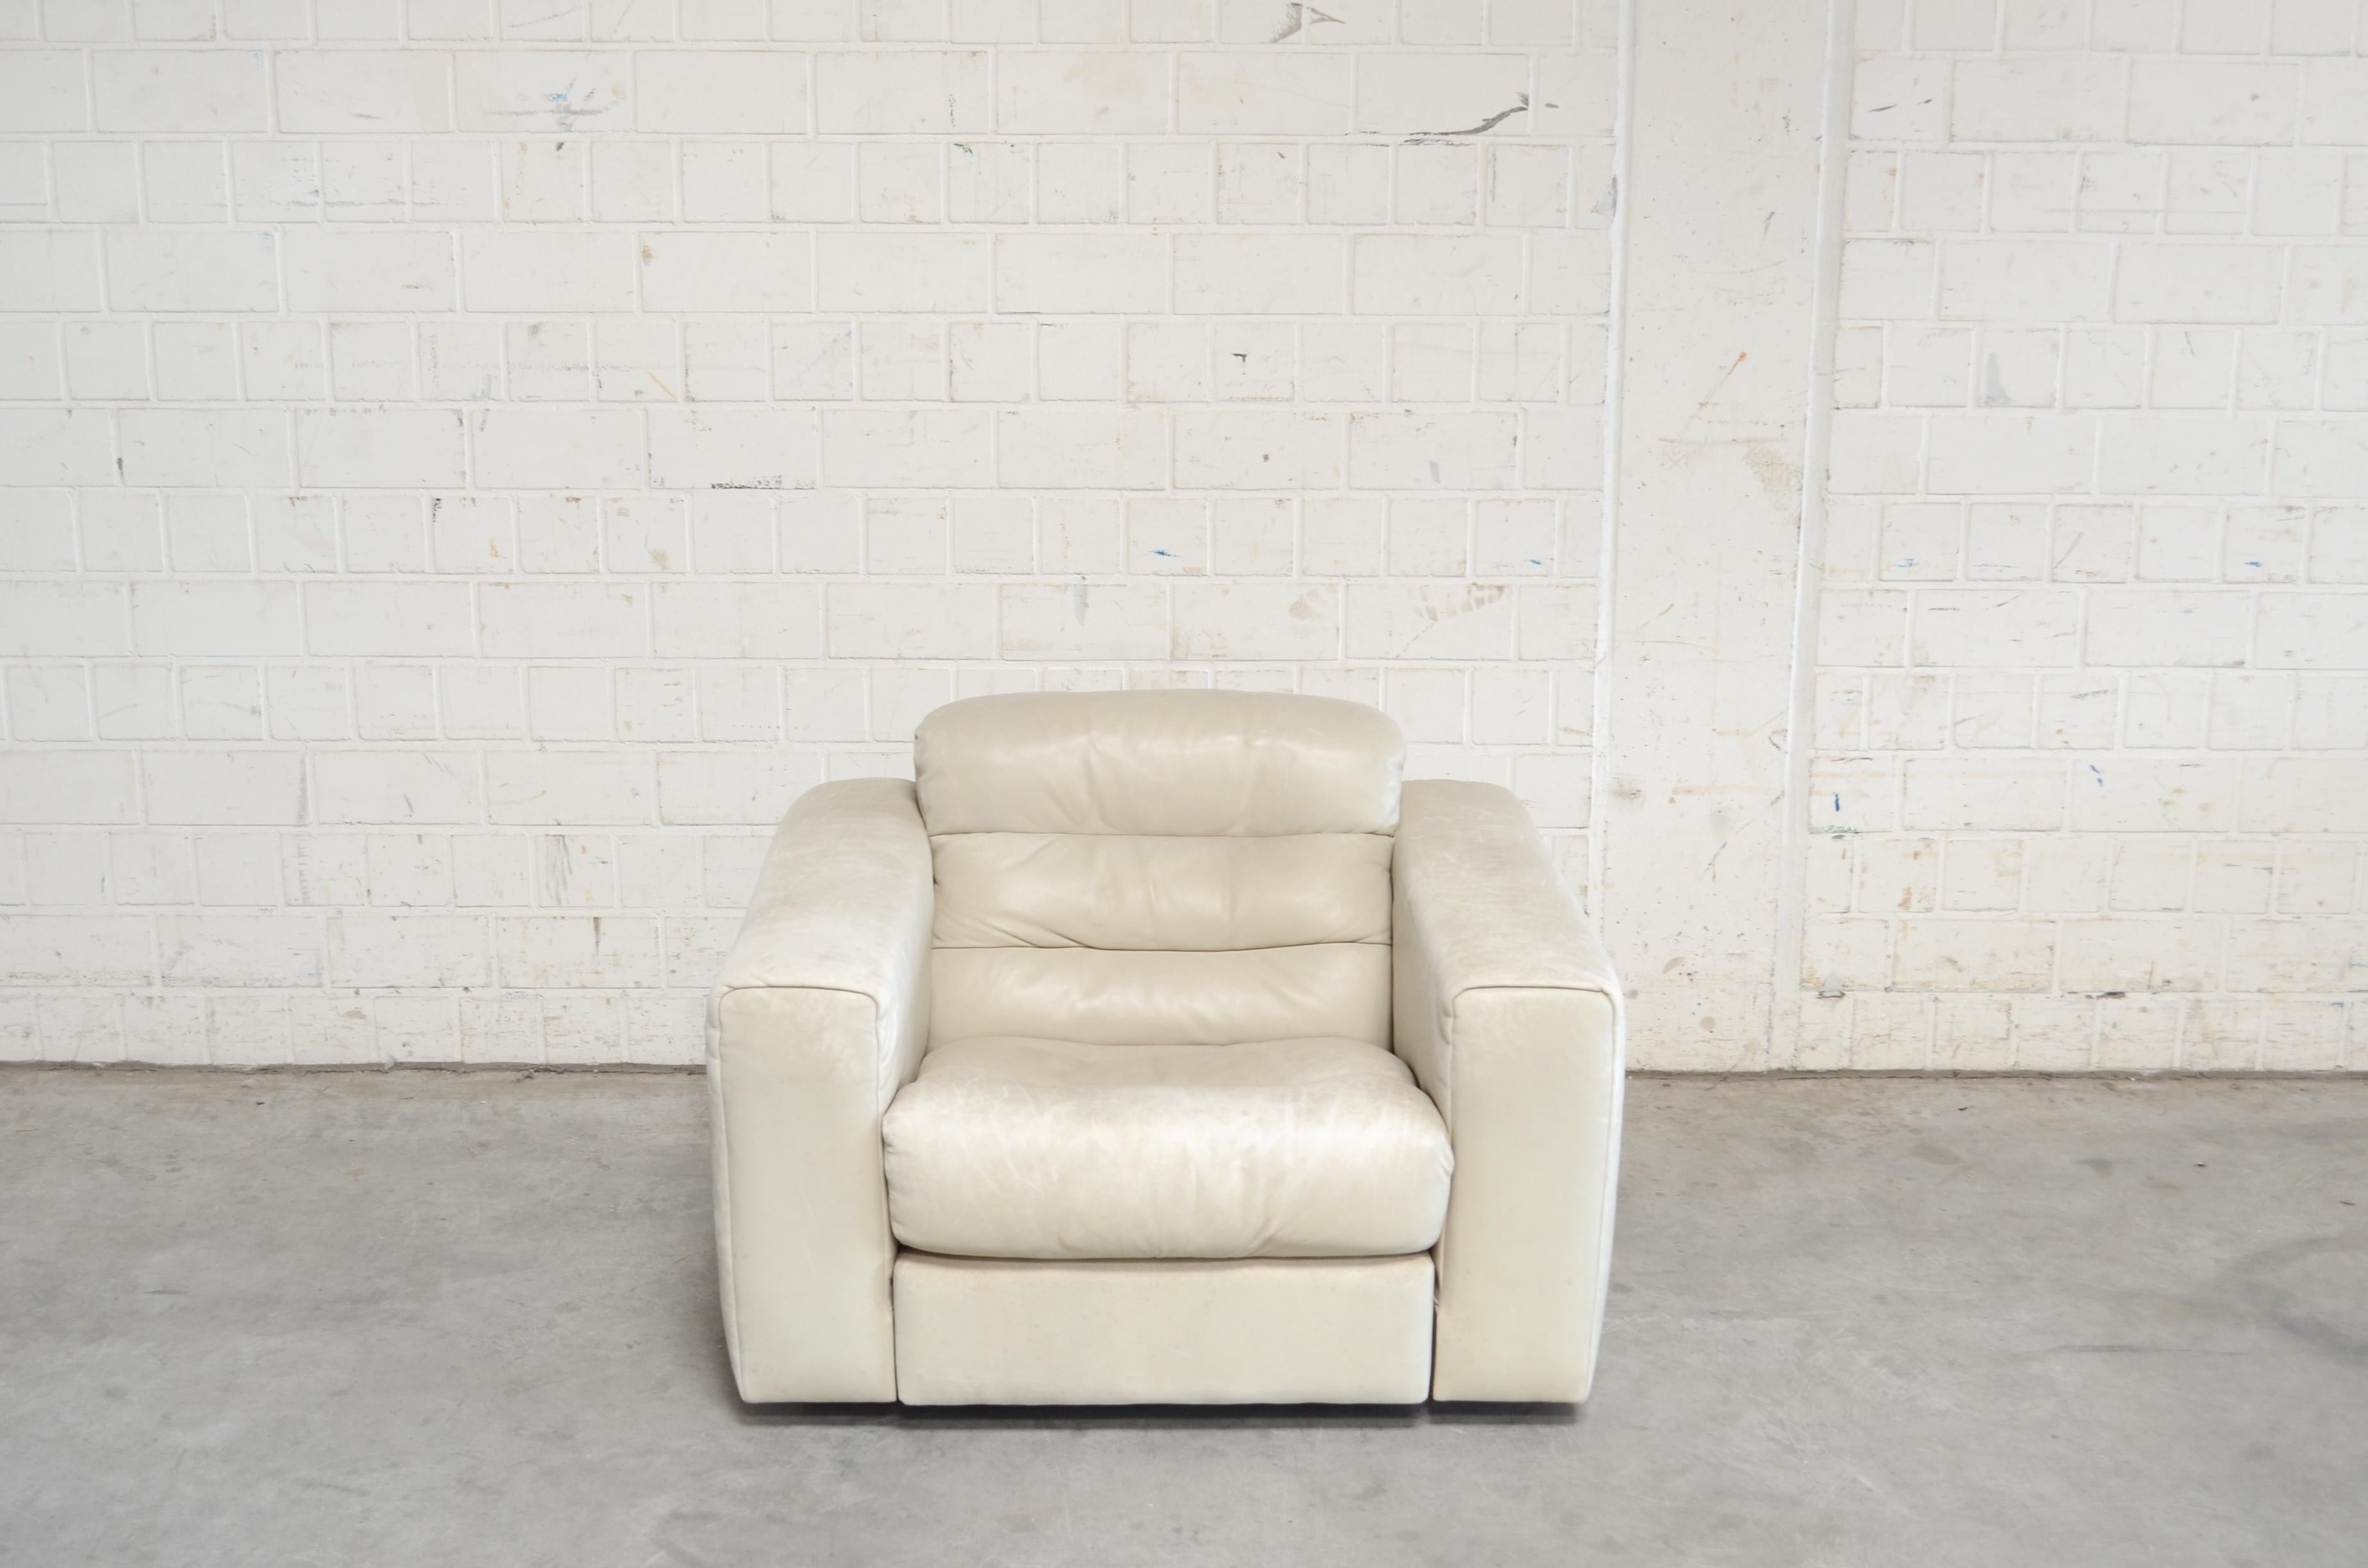 Fauteuil en cuir de Sede DS 105.
Cuir aniline en blanc écru
Un grand confort avec un siège extensible pour un plus grand confort de détente.
Il s'agit d'un modèle rare de De Sede.
Difficile à trouver.
 
 
 
 
  